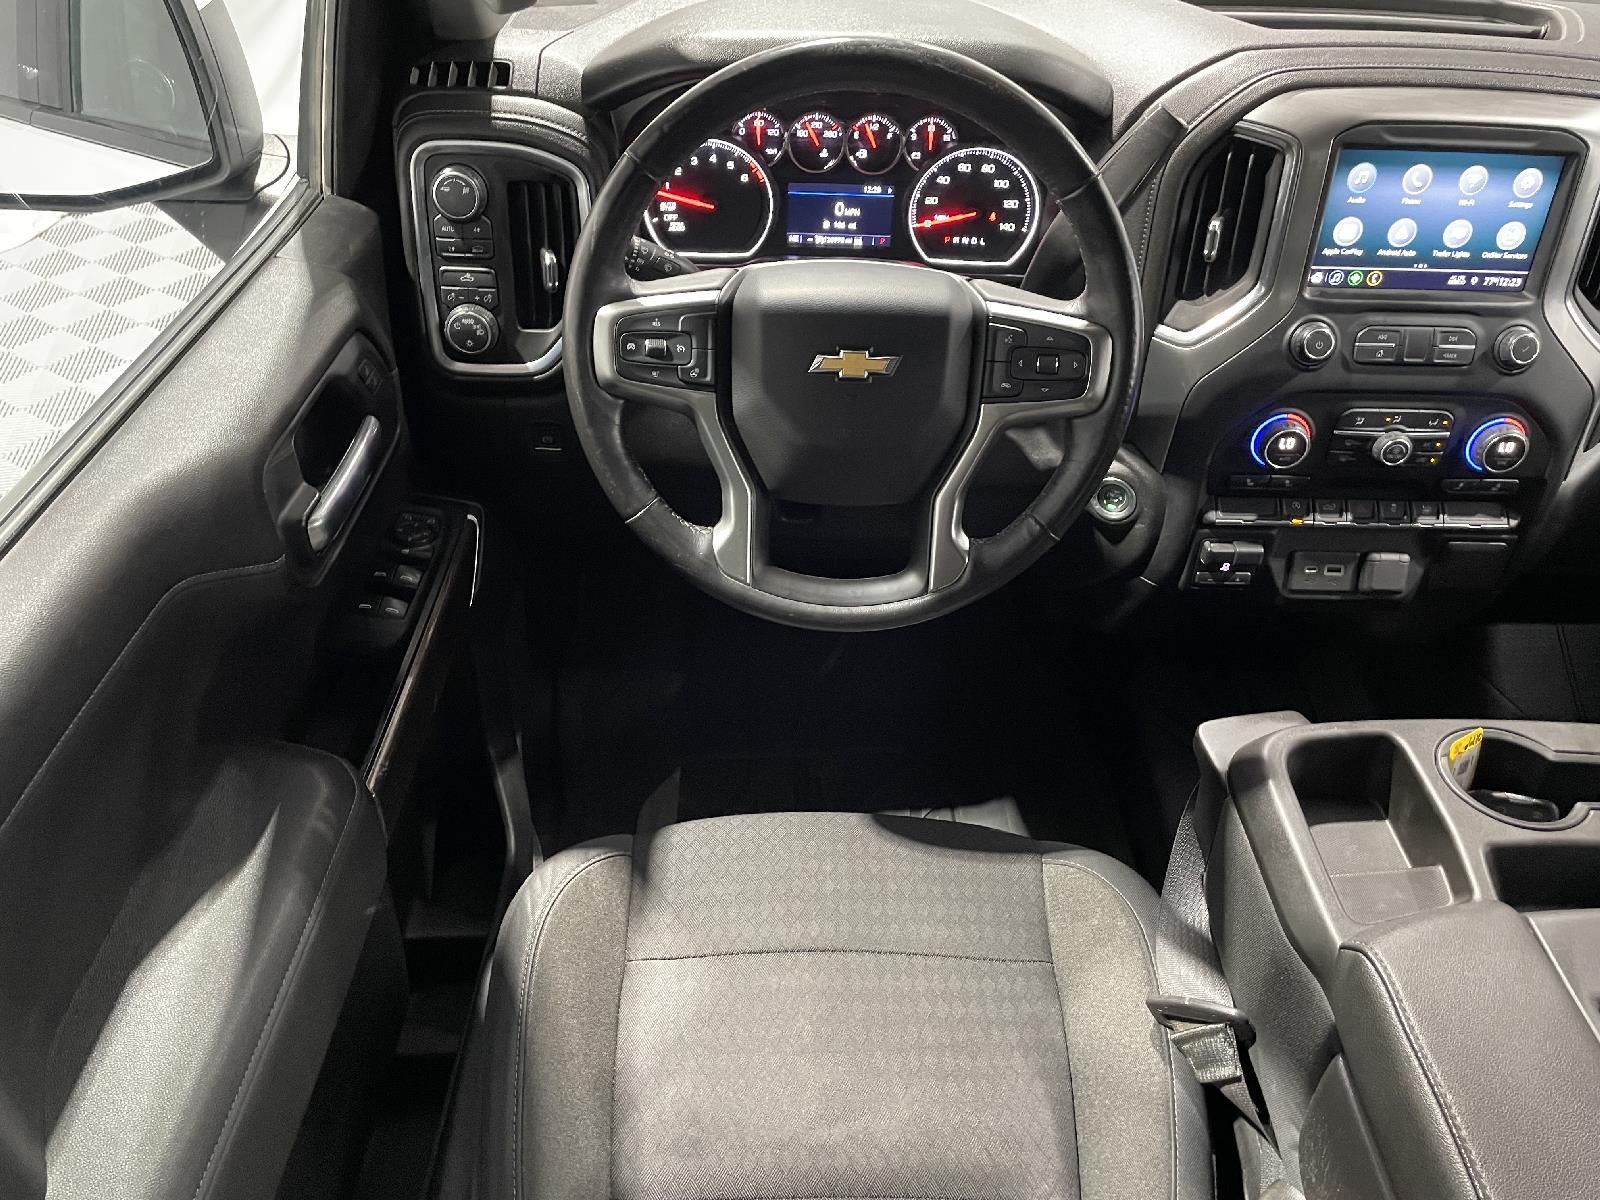 Used 2019 Chevrolet Silverado 1500 LT Crew Cab Truck for sale in St Joseph MO